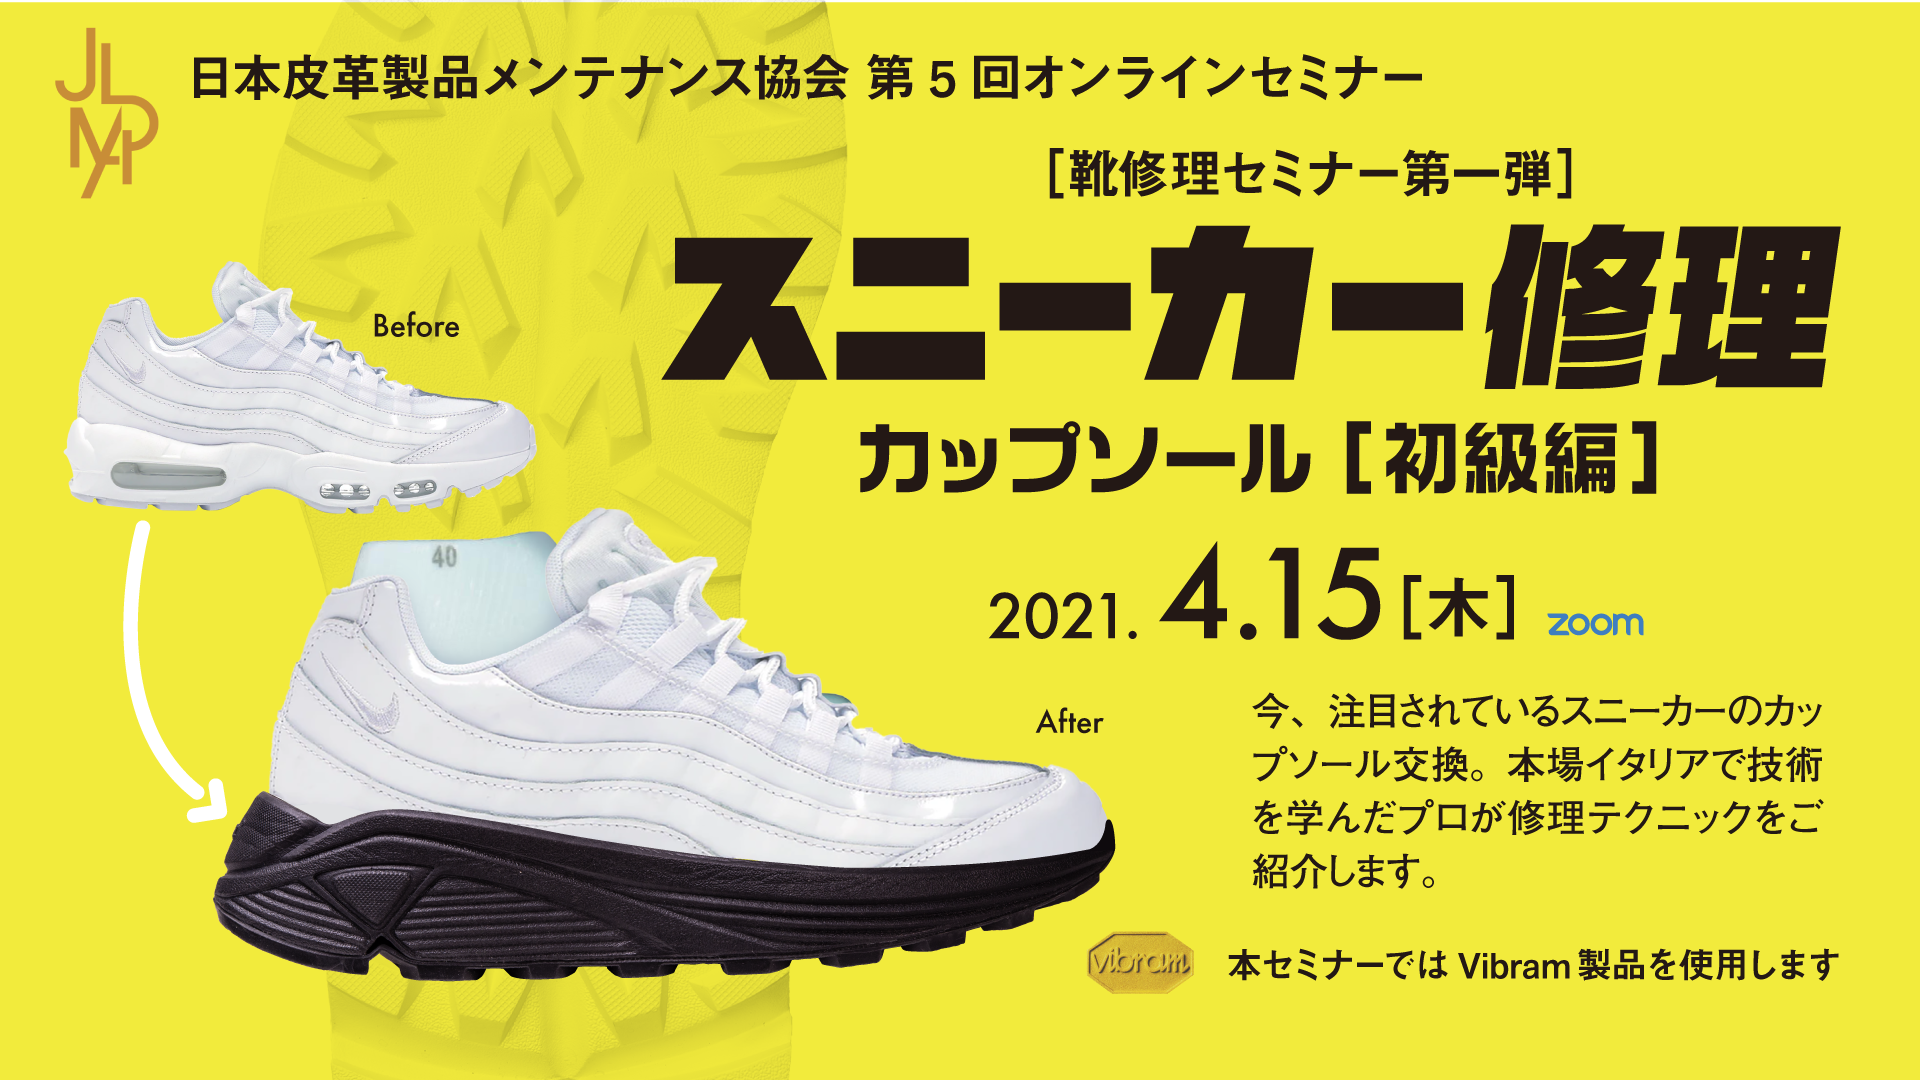 靴修理実技セミナー １ スニーカー修理ーカップソール初級編ー Subaru Co Ltd